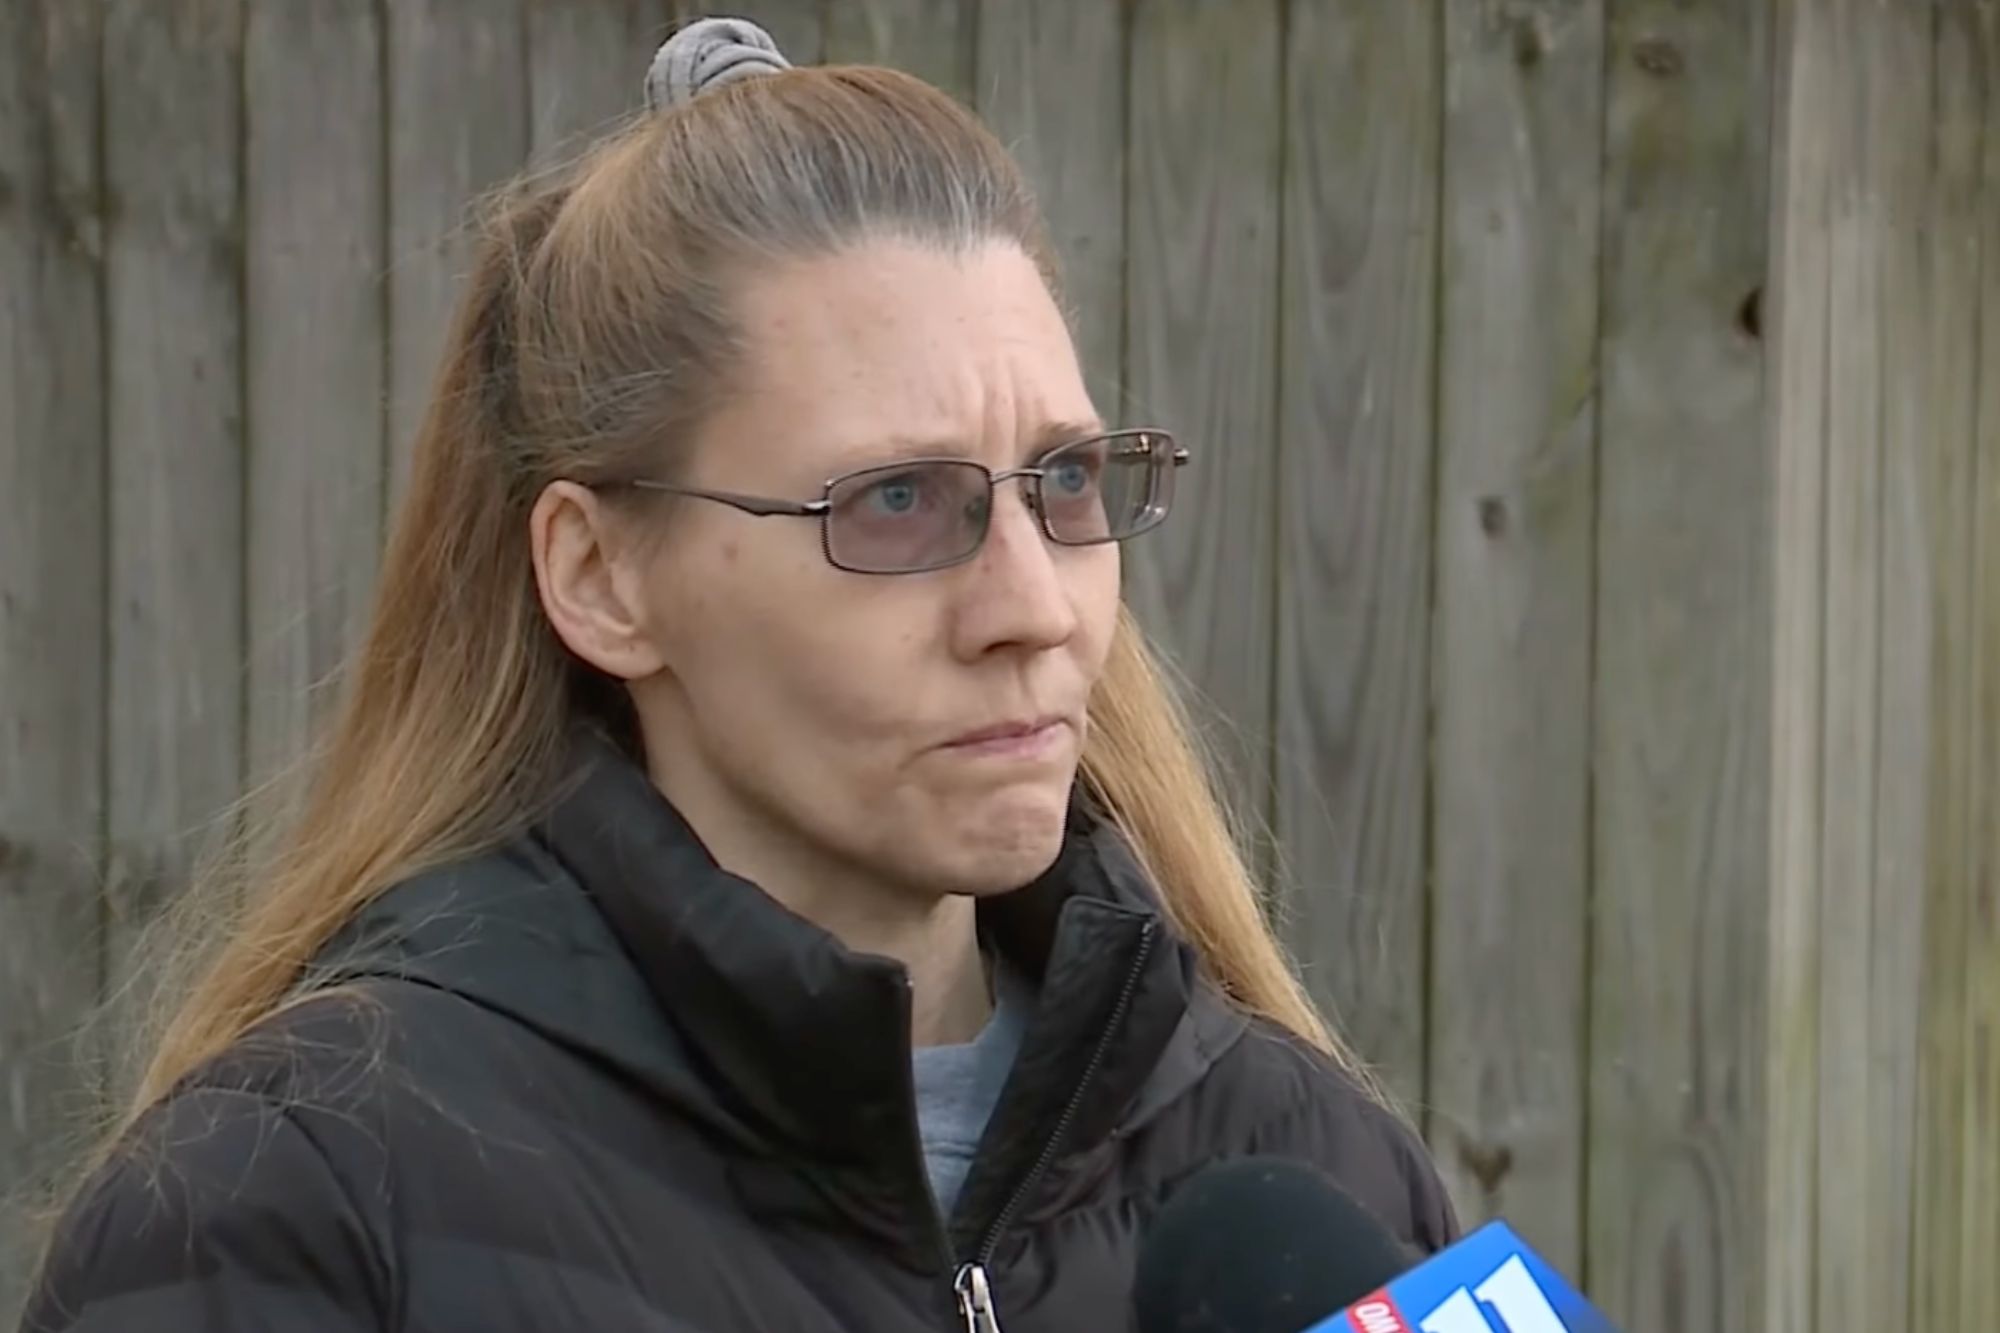 Дженнифер Мейдж, жительница американского штата Иллинойс, случайно нашла в шкафу тело супруга после его восьмимесячного исчезновения